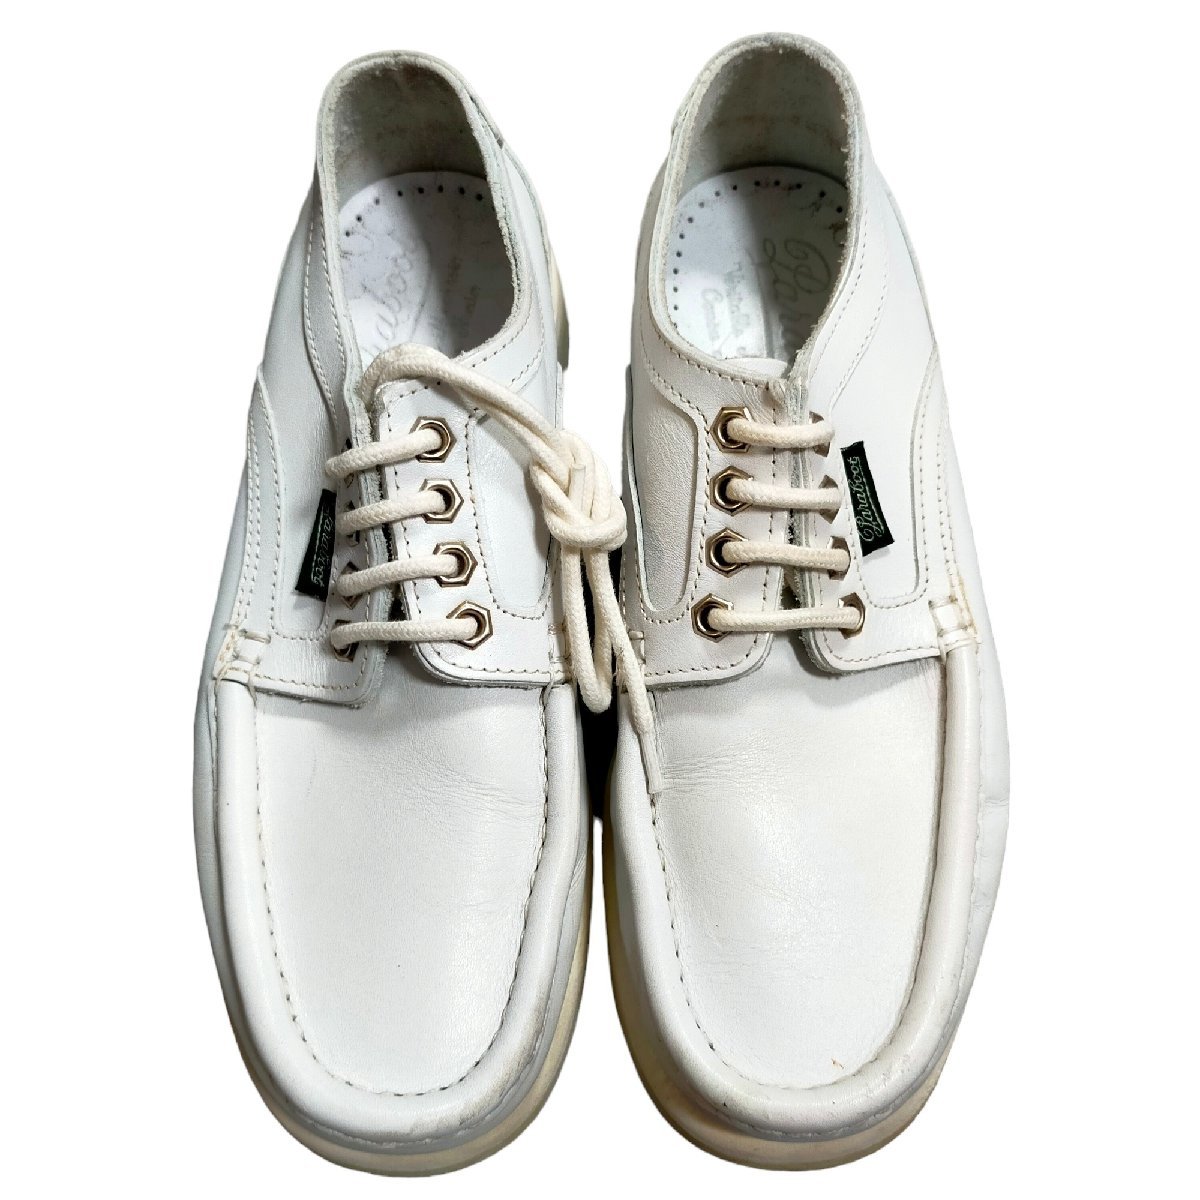 ◆中古品◆PARABOOT パラブーツ シューズ 靴 4.5 日本サイズ約 24.0‐24.5cm 白 ホワイト ファッション 本体のみ J48417NCの画像1